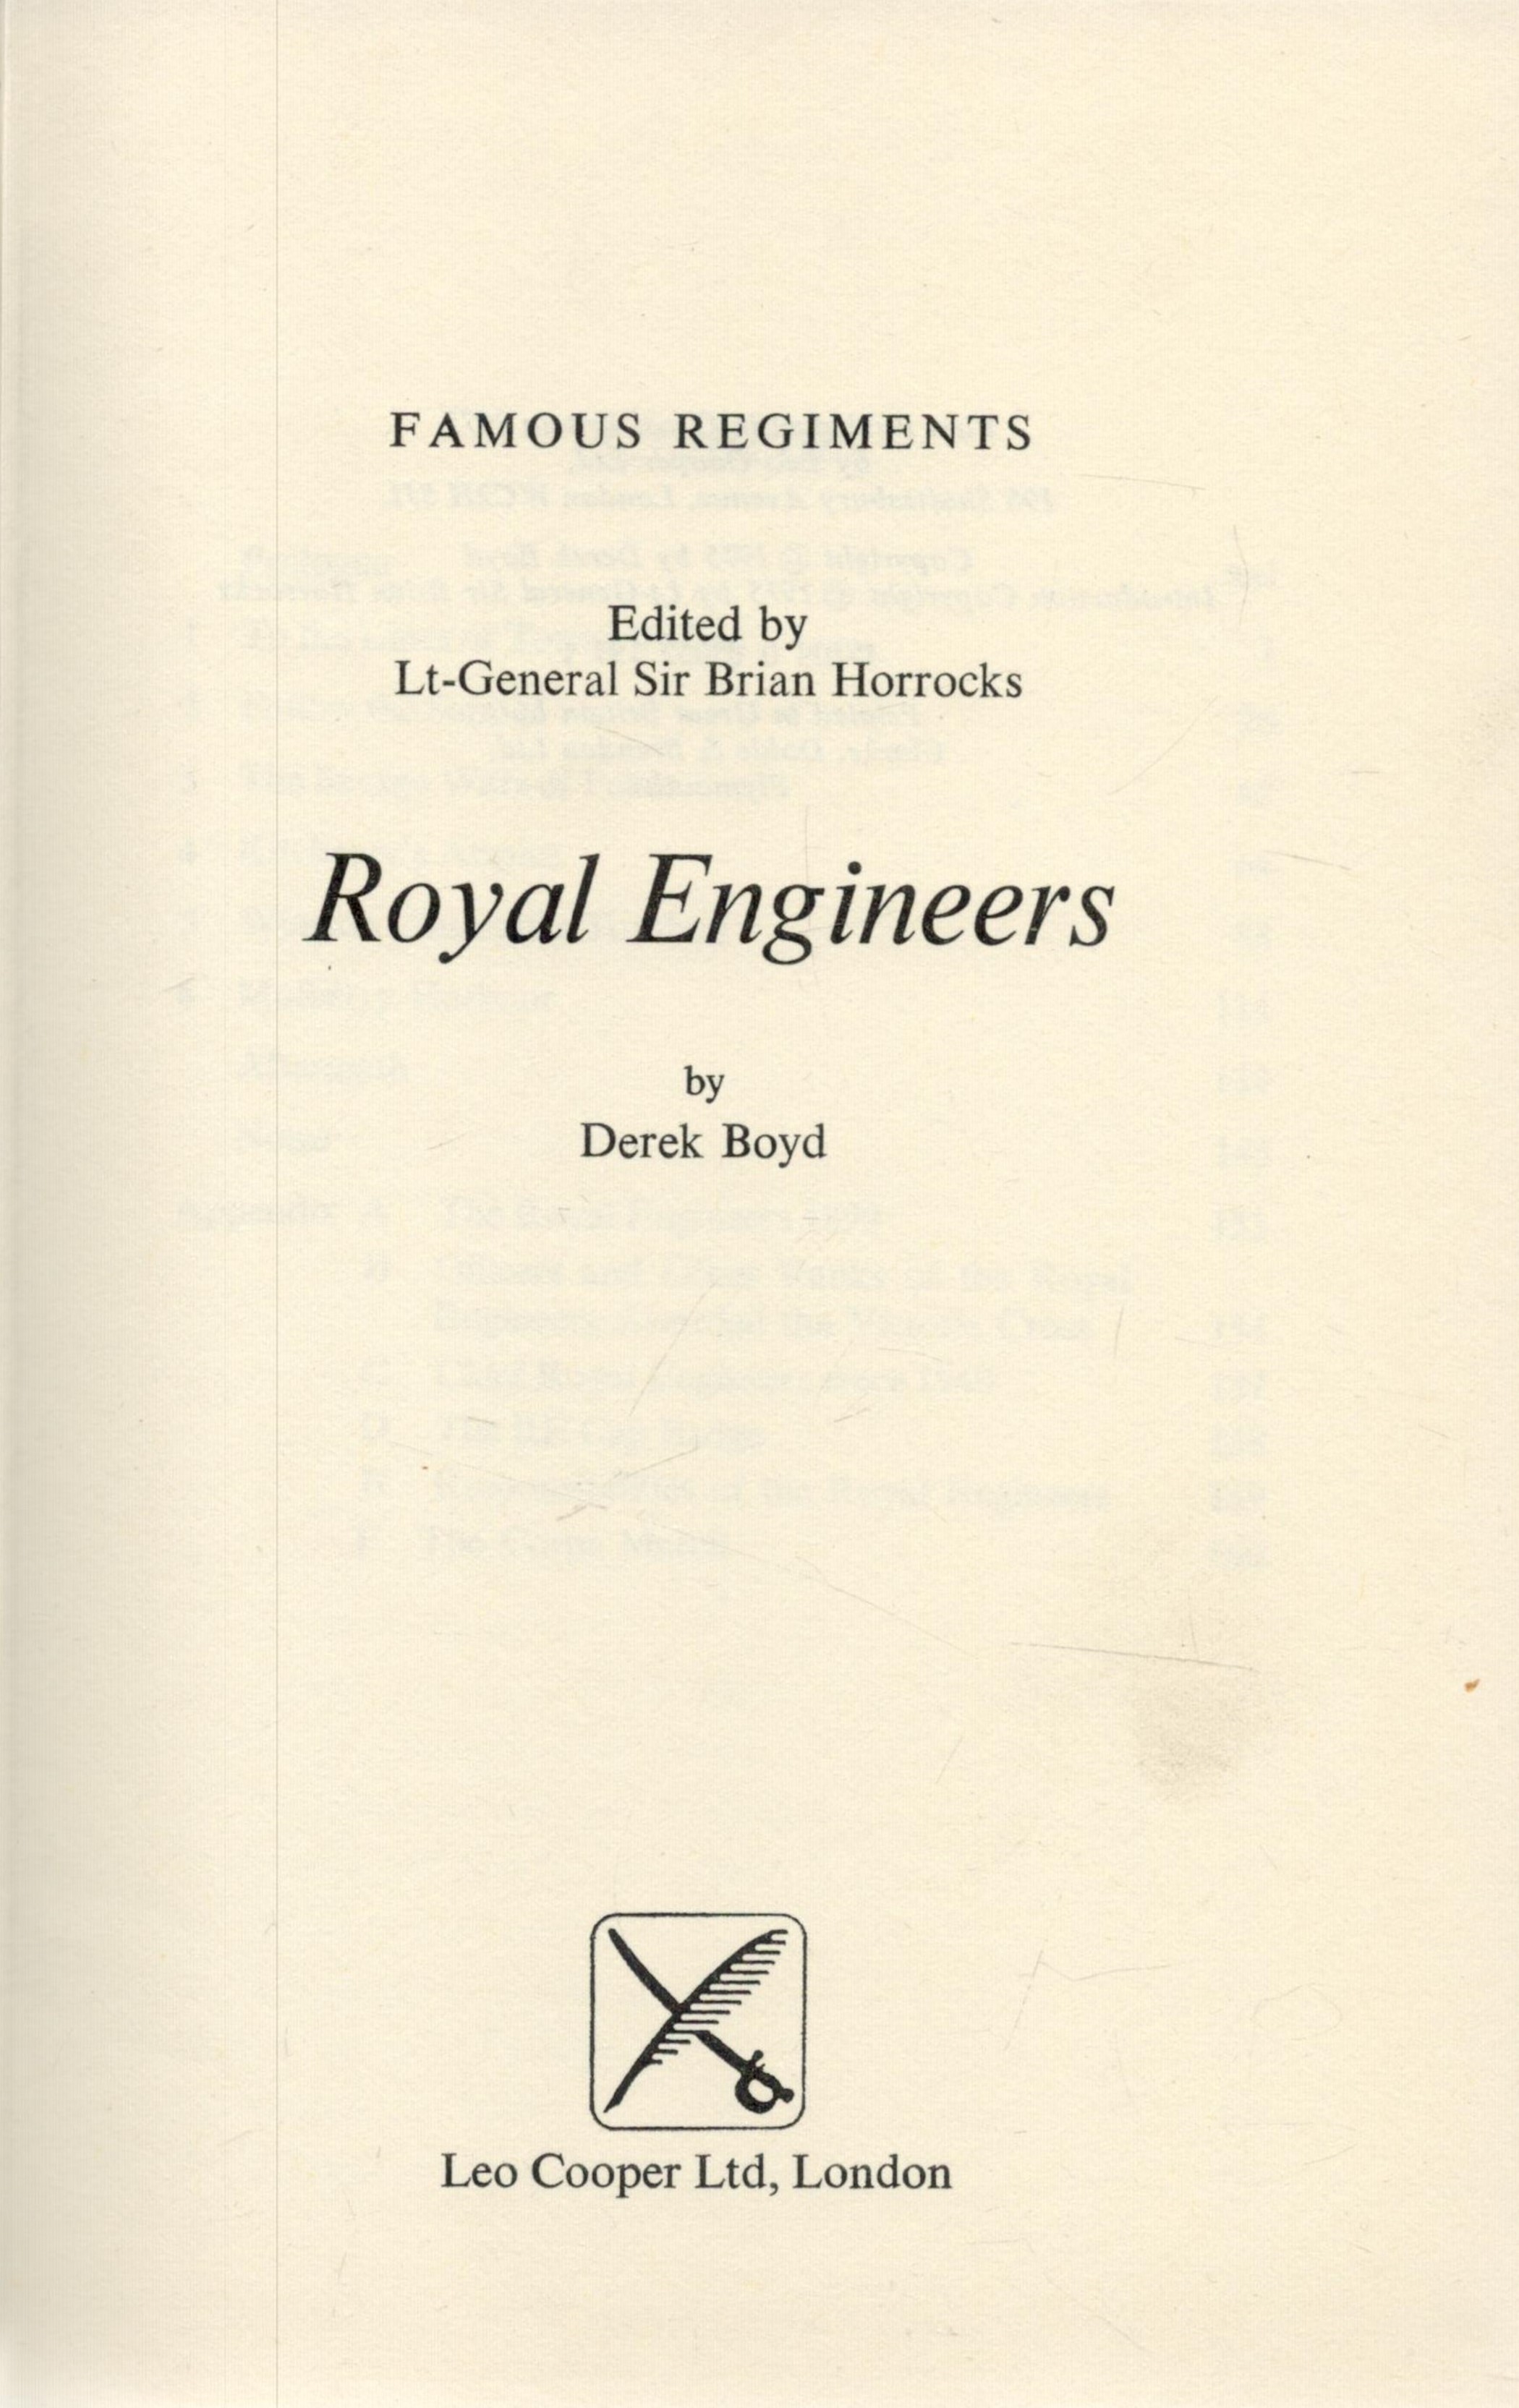 Famous Regiments. Edited by Lt. General Sir Brian Horrocks. Royal Engineers. By Derek Boyd. - Image 2 of 3